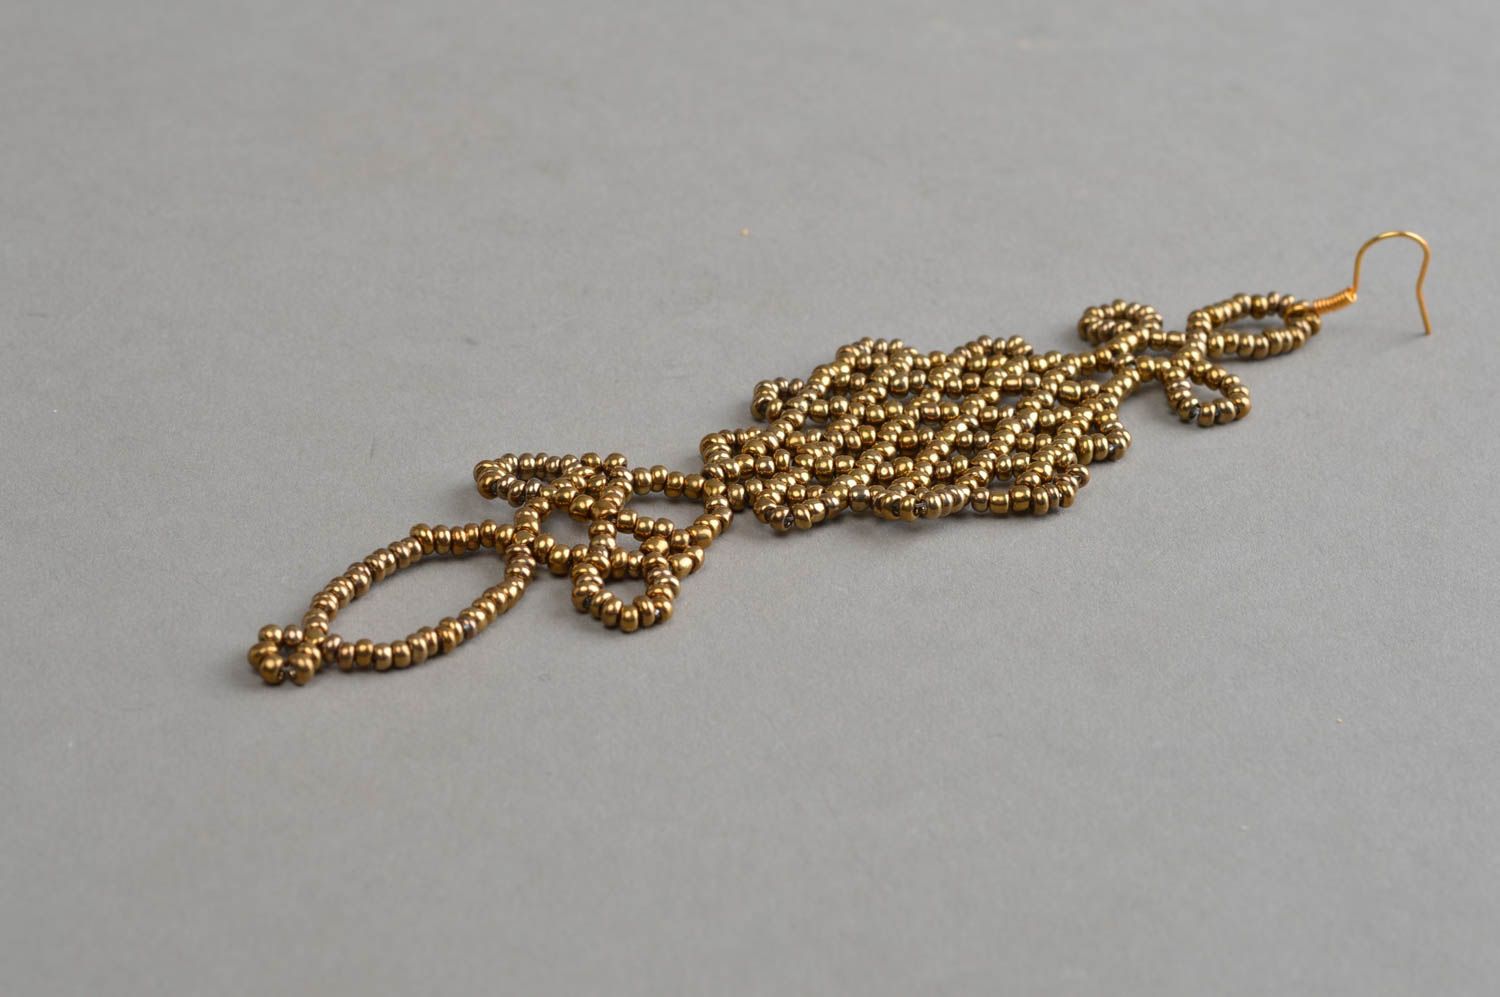 Бисерная серьга длинная ажурная бронзового оттенка плетеная ручной работы фото 2